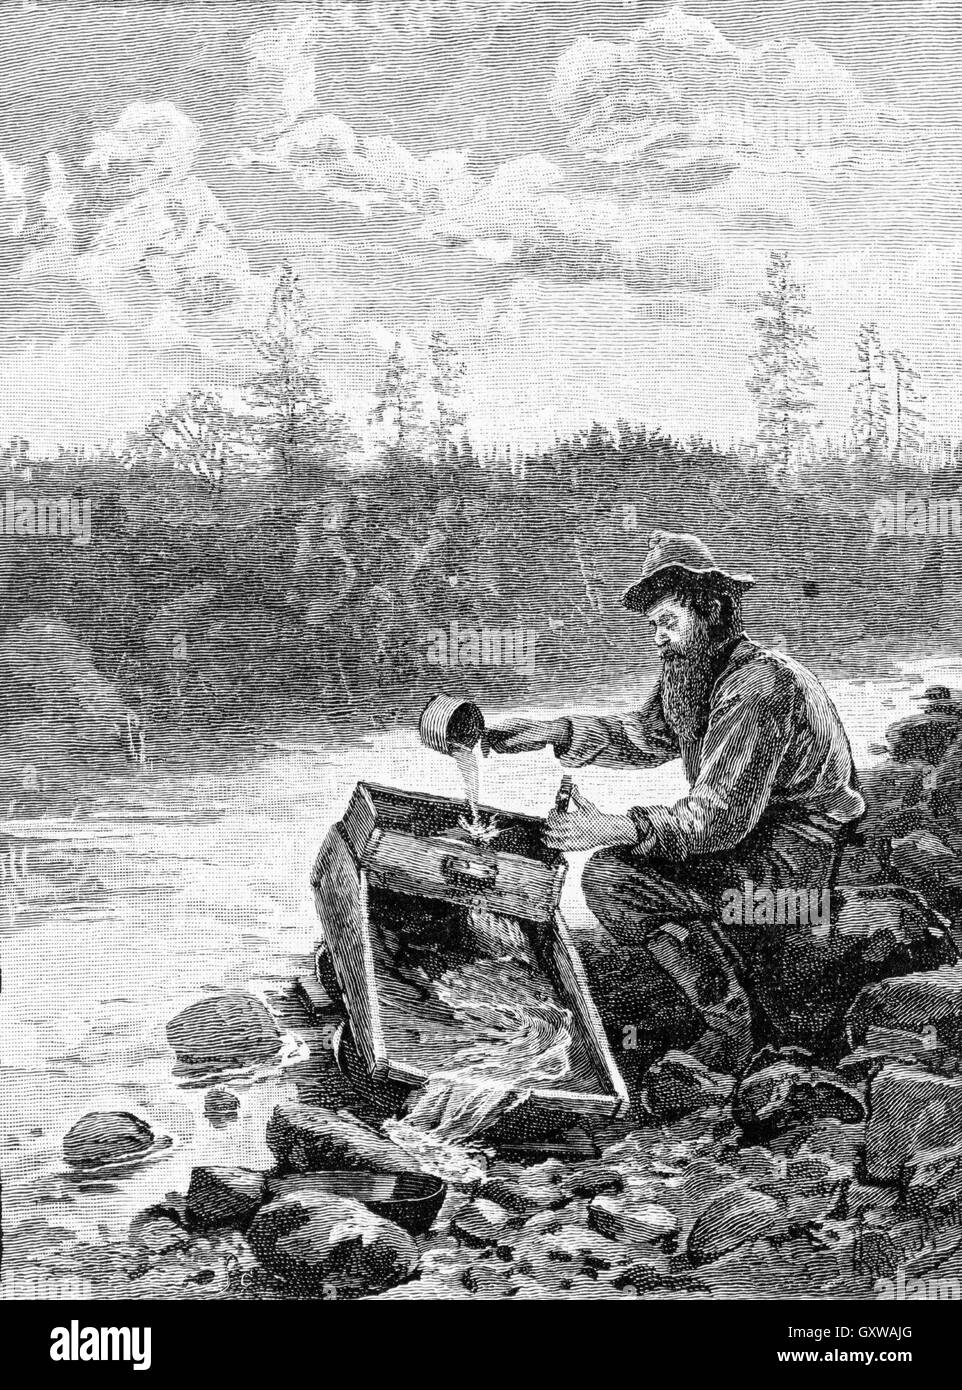 HENRY SANDHAM (1842-1910) artiste canadien. La gravure d'un chercheur d'or en Californie le panoramique avec une station d'environ 1849 Banque D'Images